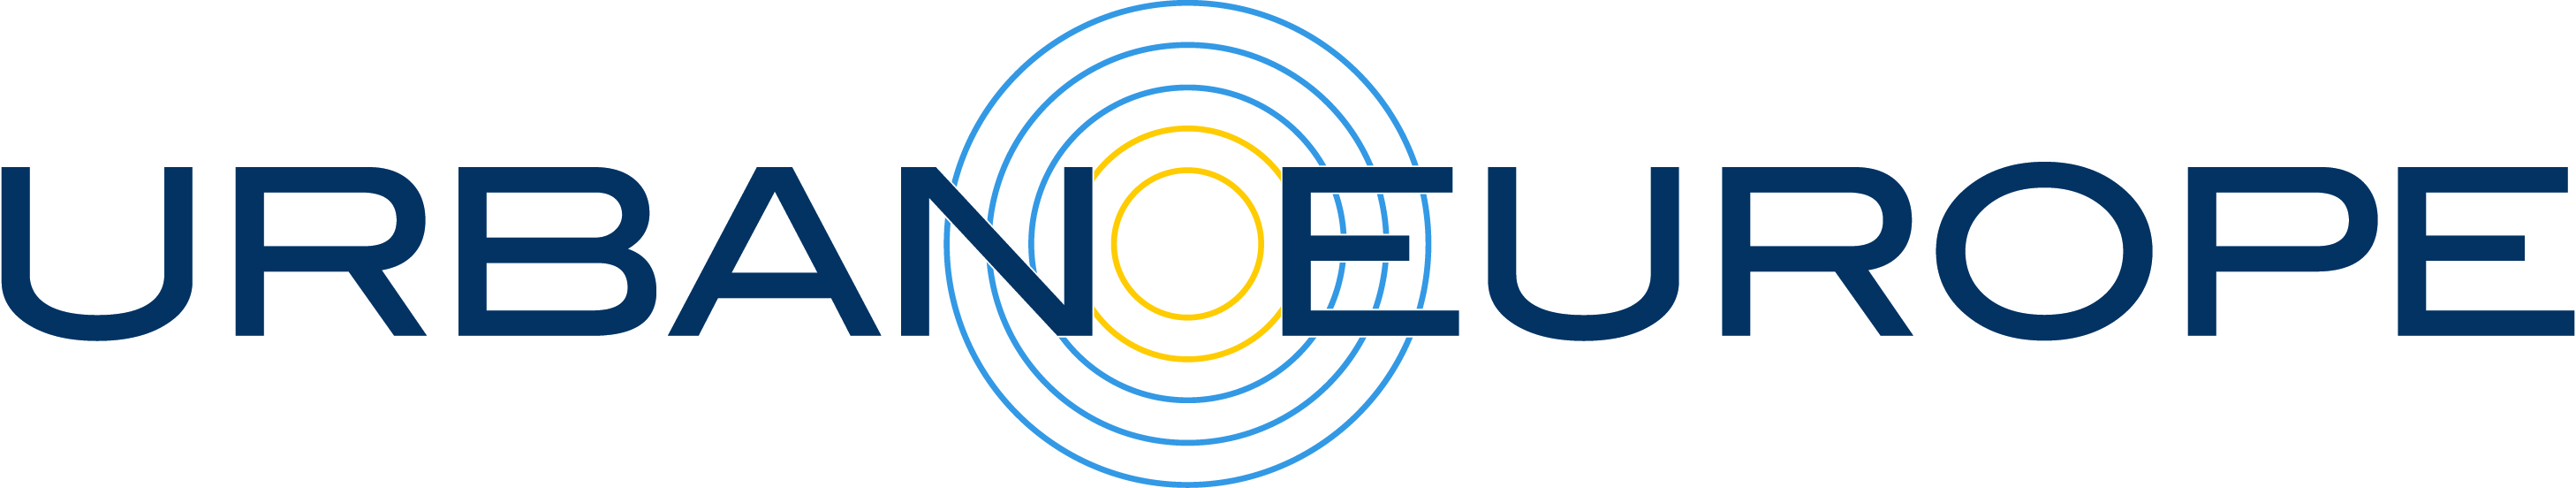 Logo JPI Urban Europe